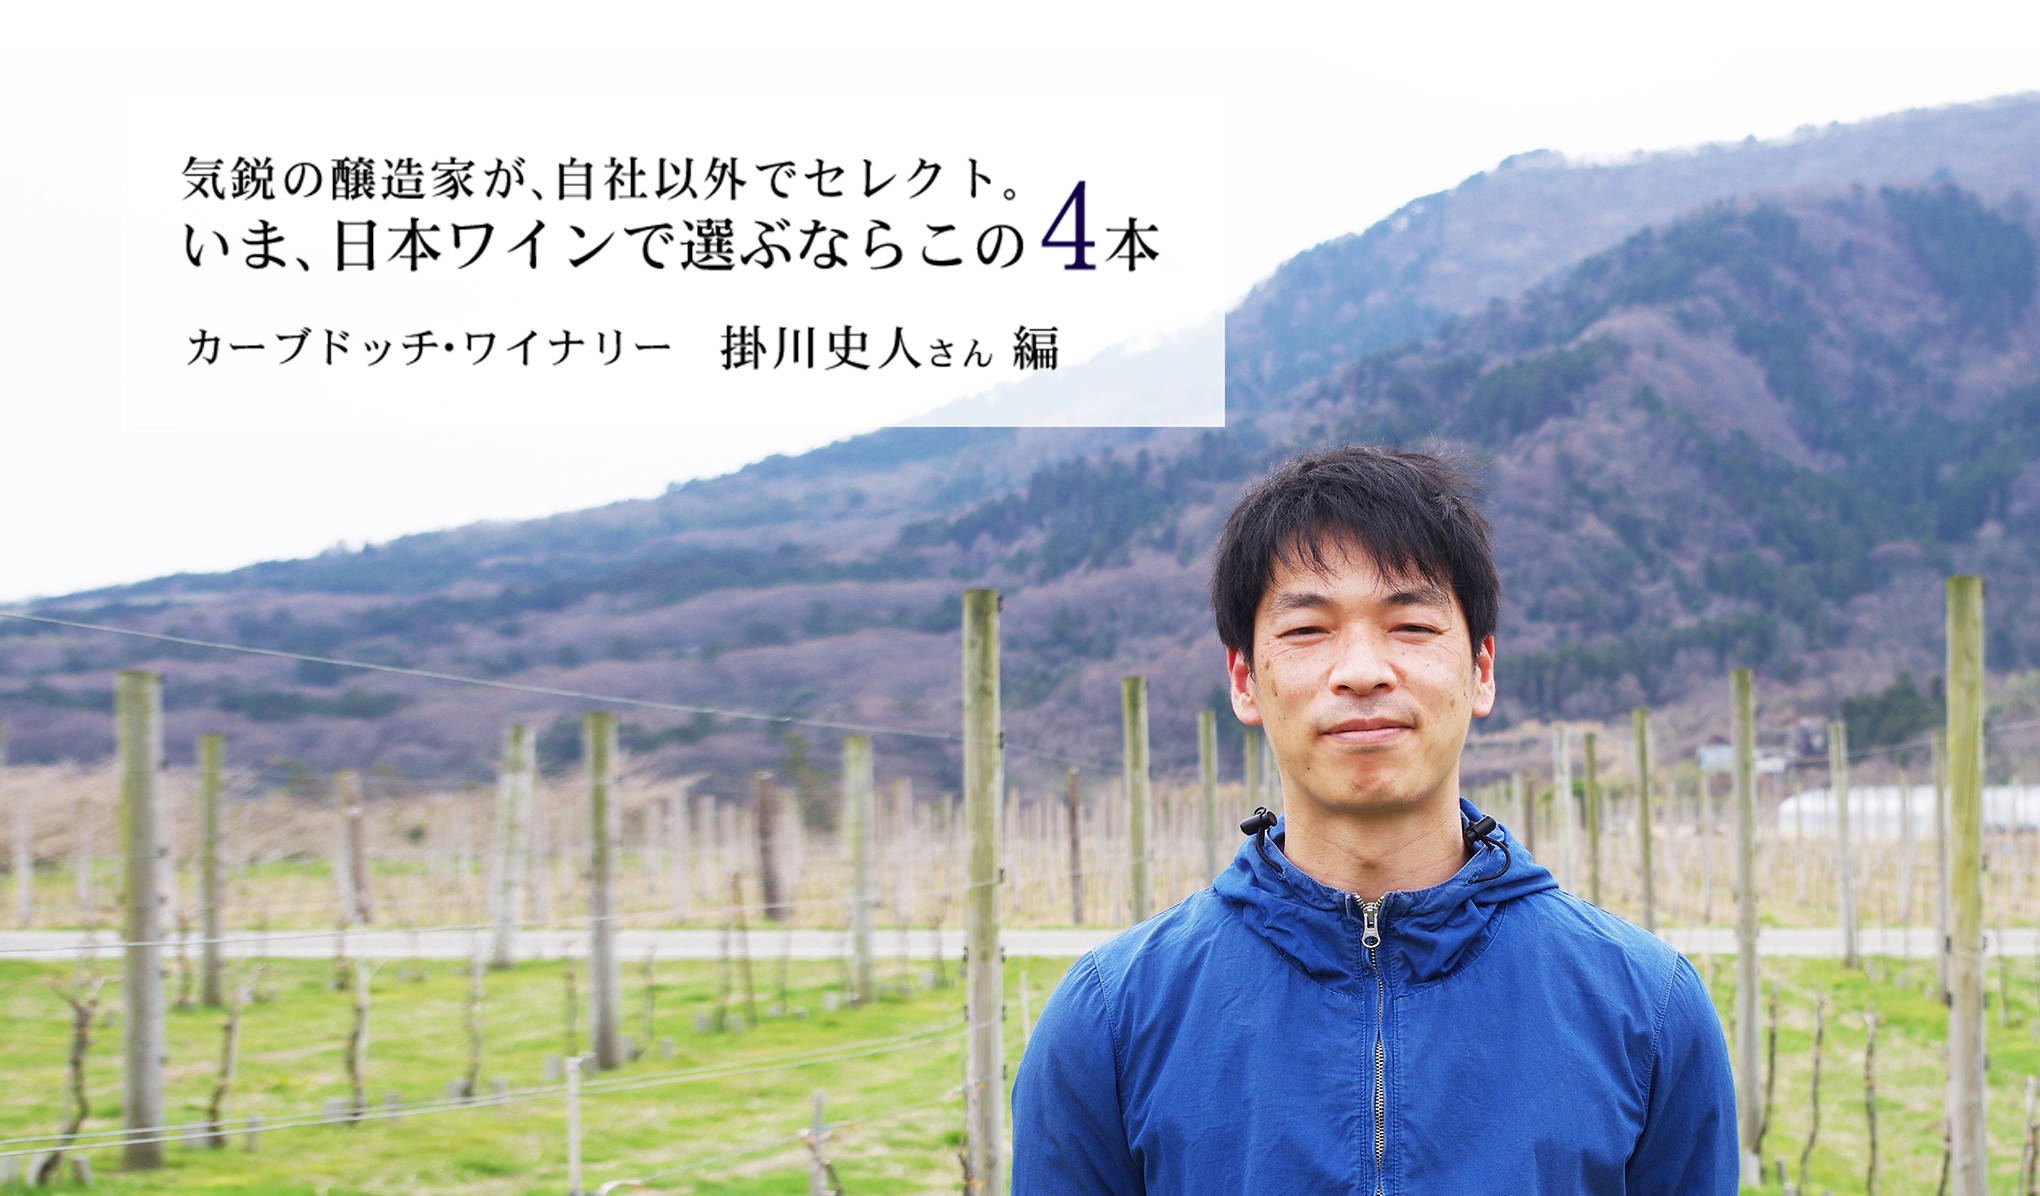 気鋭の醸造家、カーブドッチ・ワイナリーの掛川史人(かけがわふみと)さんが、自社以外でセレクト。いま、日本ワインで選ぶならこの4本